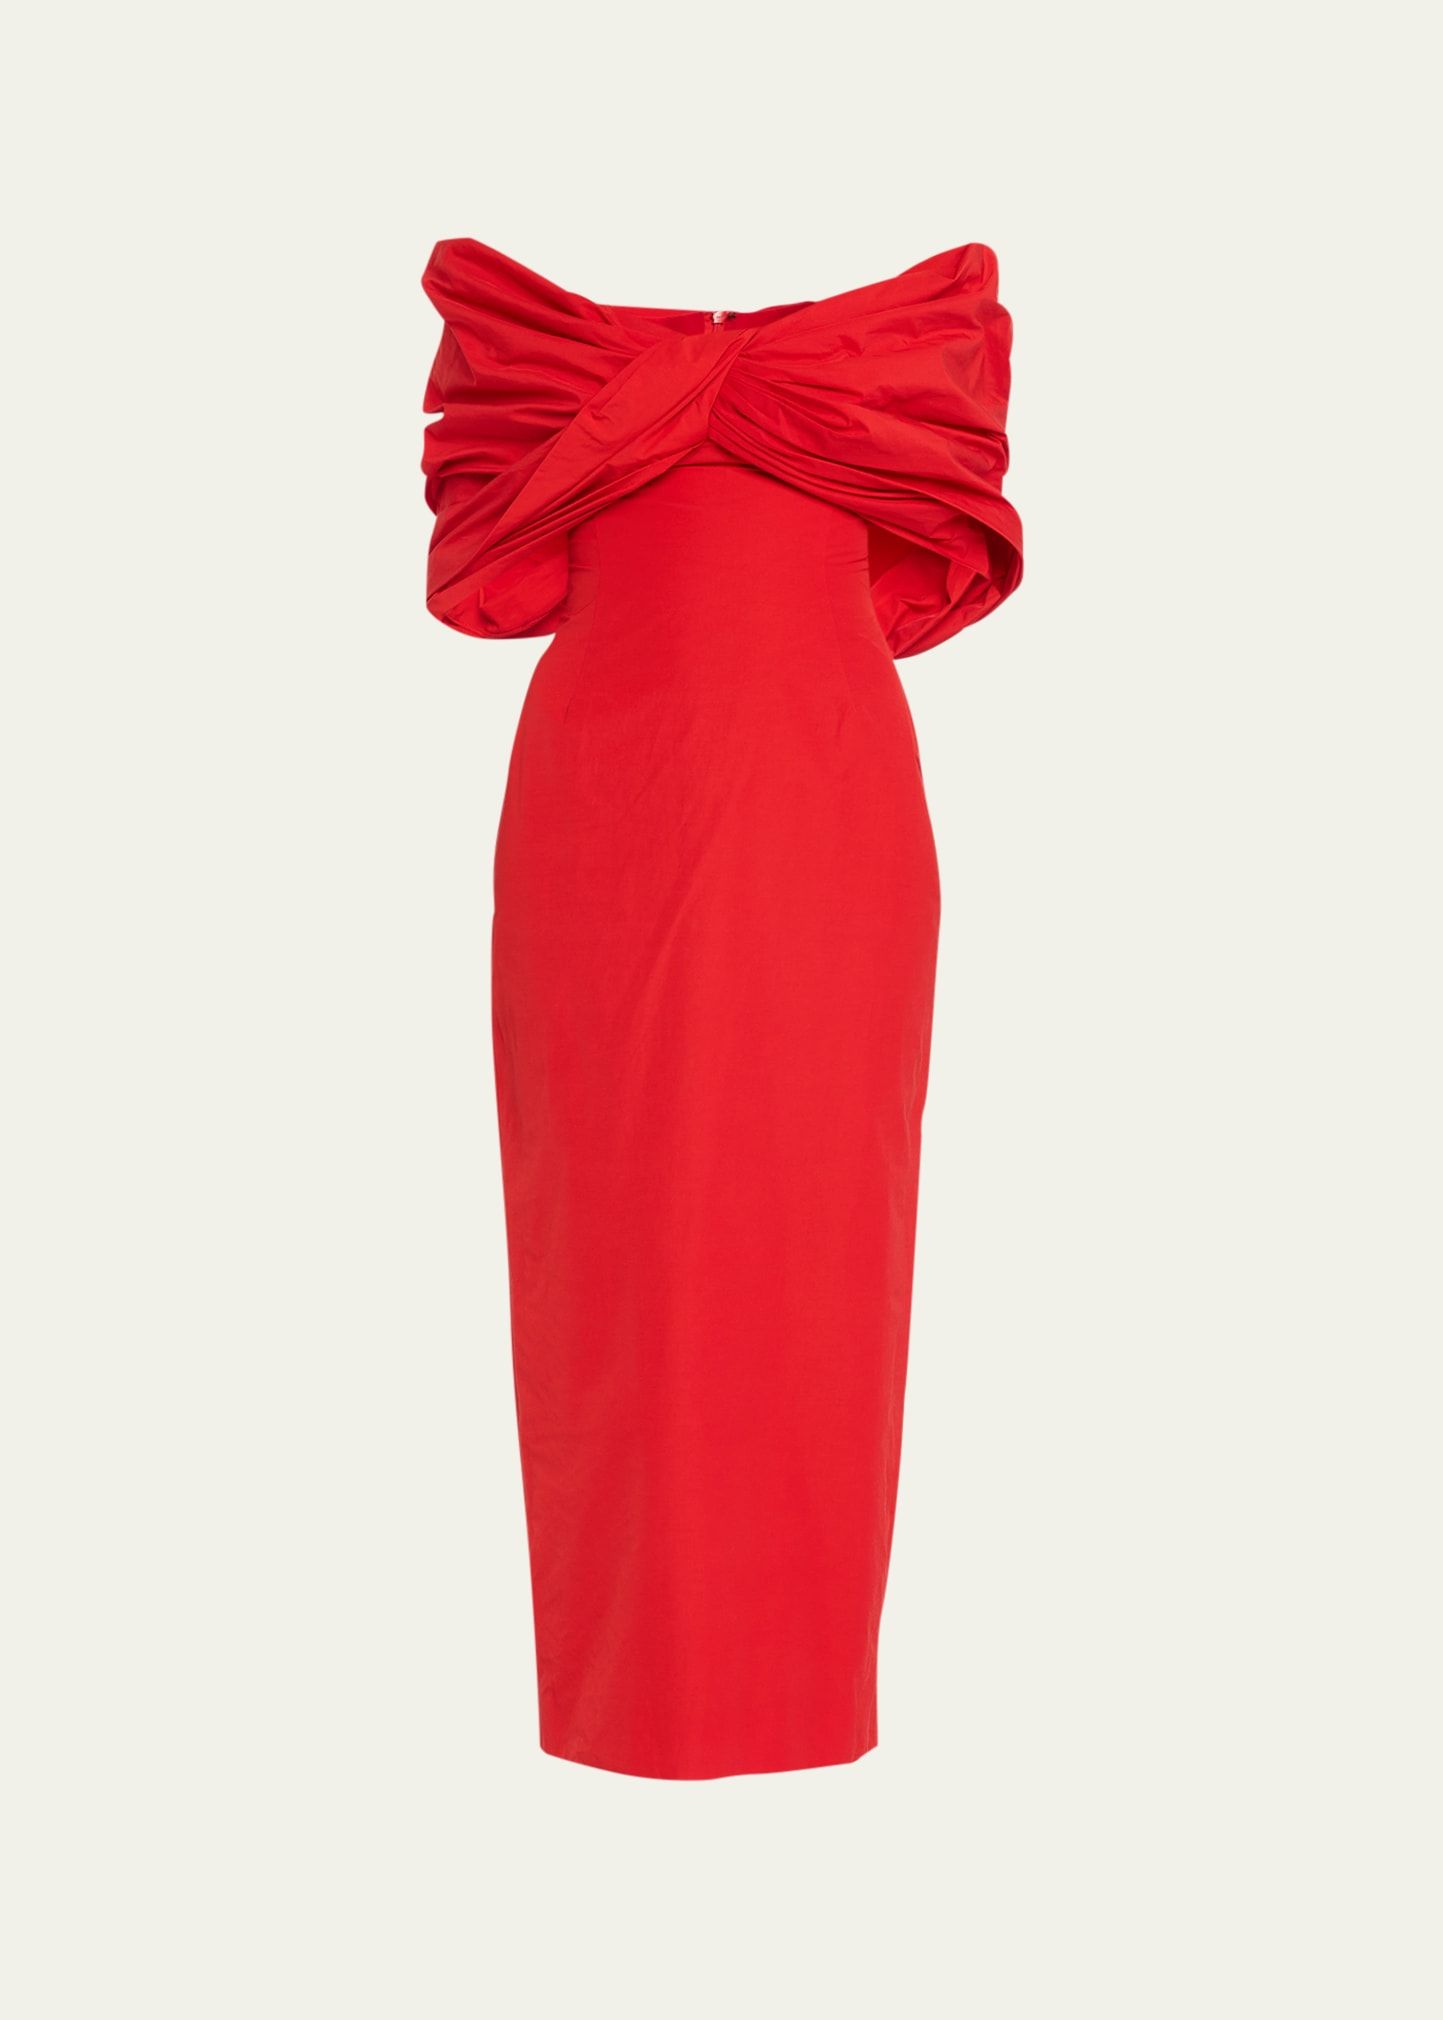 Rosie Assoulin Old Hollywood Off-Shoulder Cocktail Dress | Bergdorf Goodman